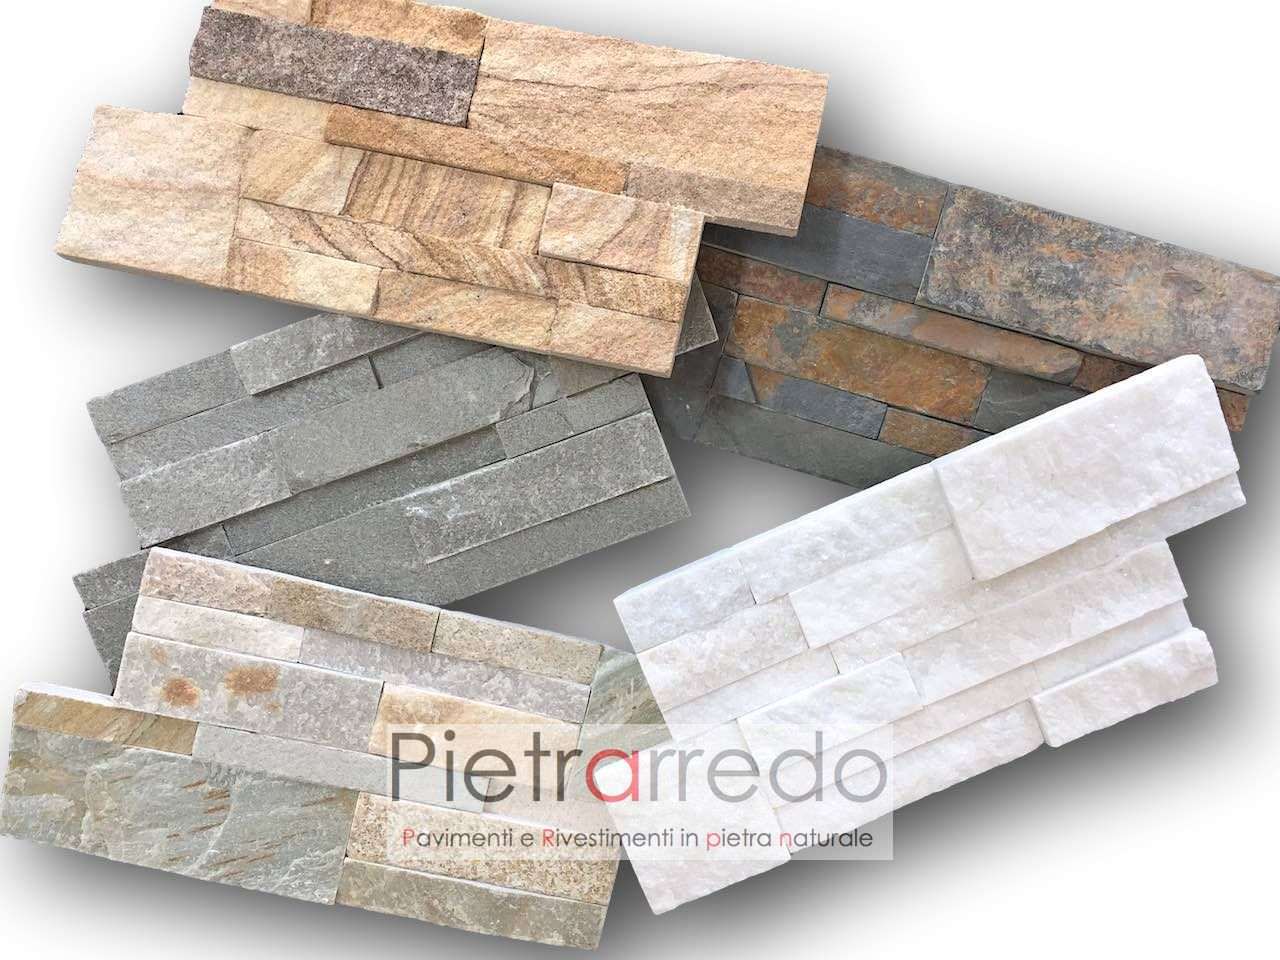 rivestimenti-pietra-scozzese-prezzo-costo-pietrarredo-milano-stone-cladding-price-panel-placche-decorative